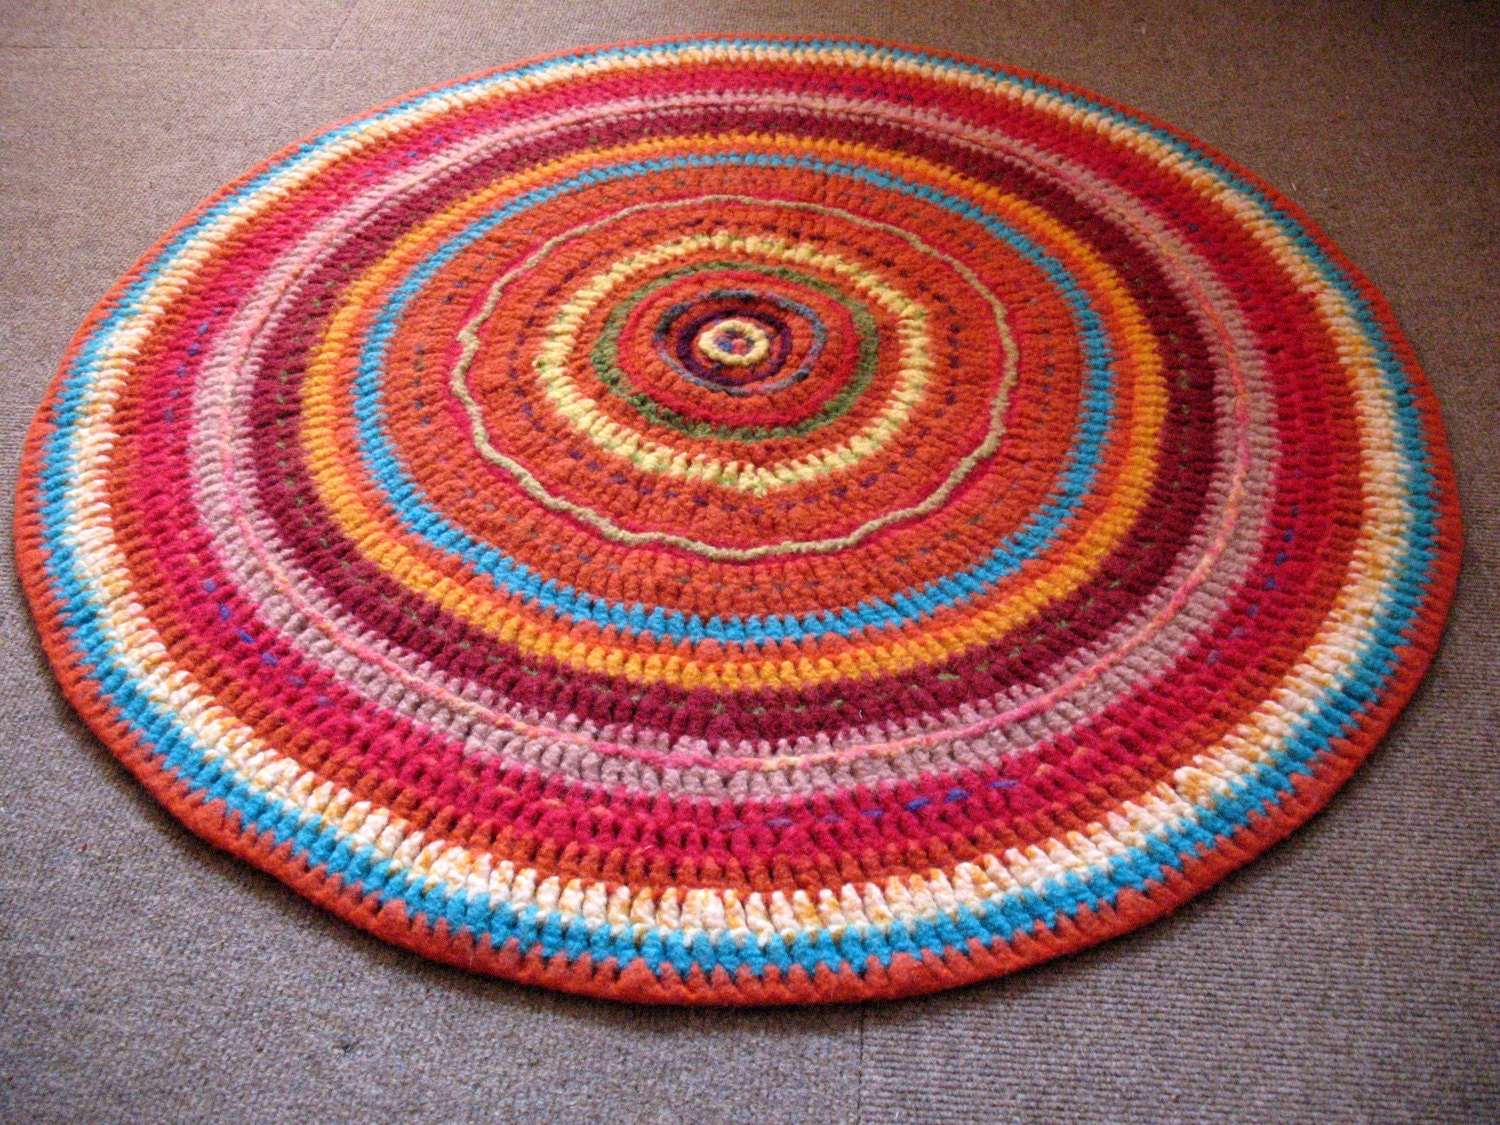 Image of needle felt rug